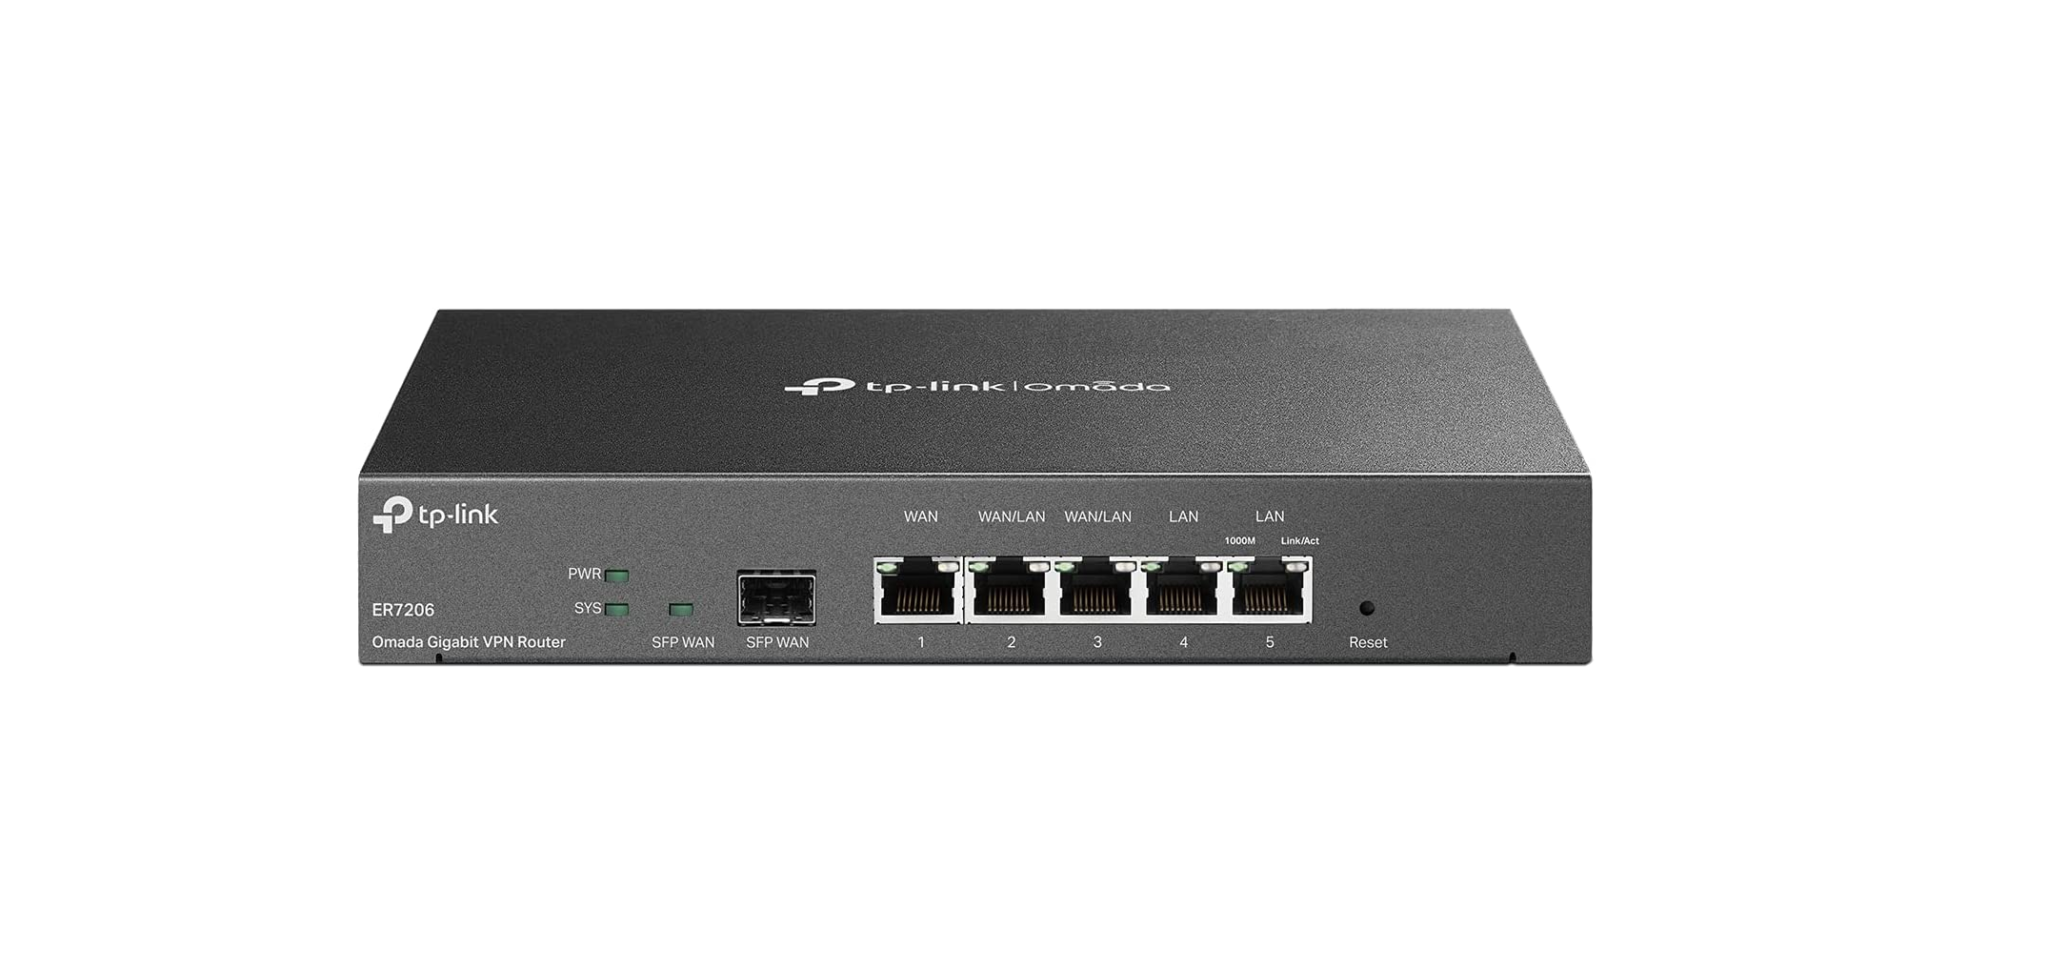 ER605 Omada Gigabit VPN Router